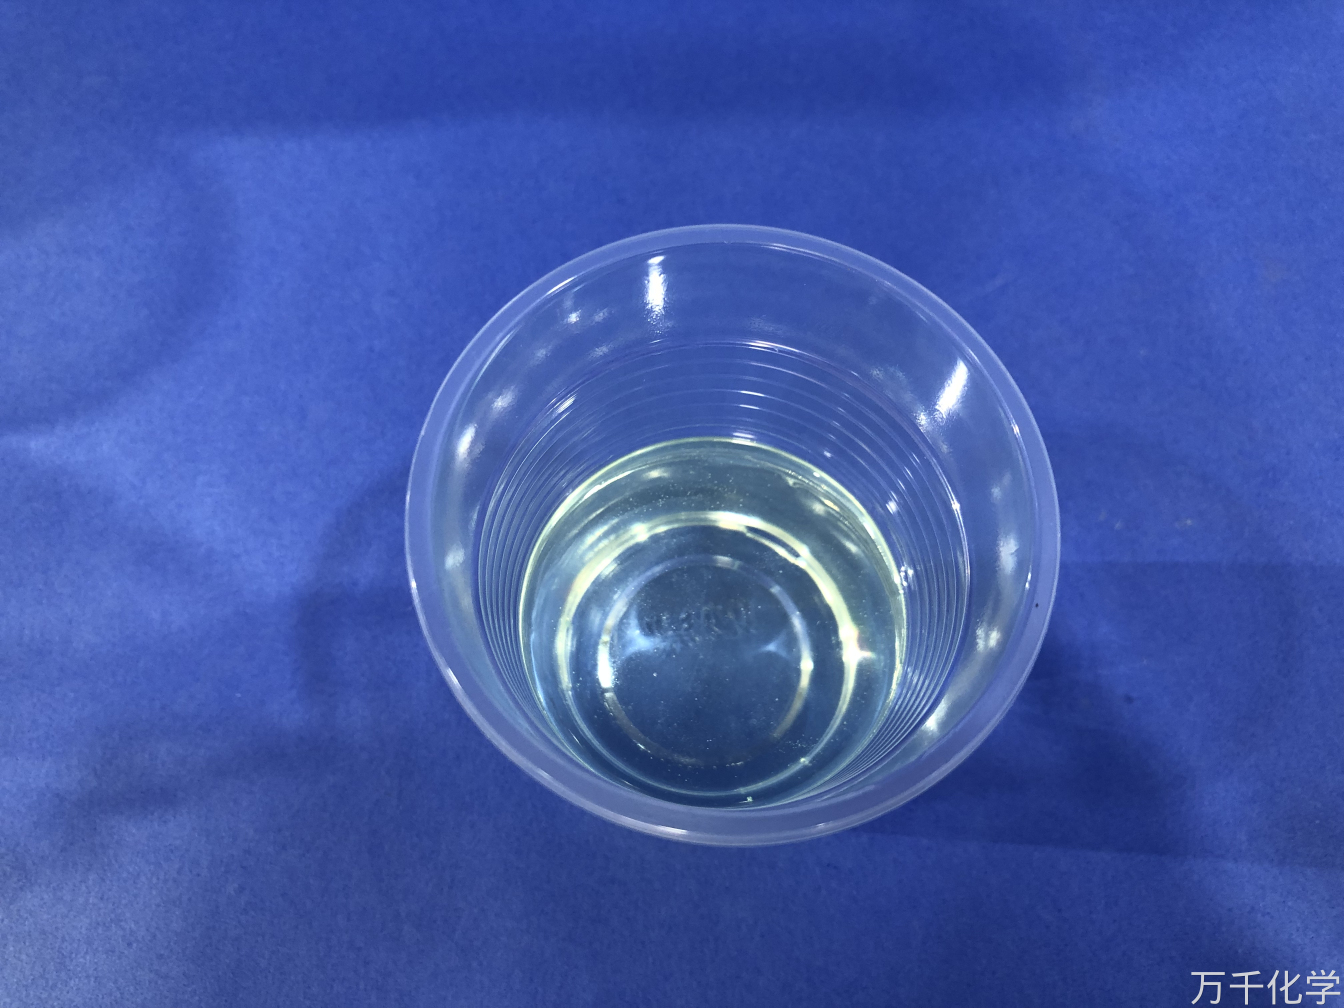 TM -189ガラス鋼船体製品用の耐水性不飽和ポリエステル樹脂